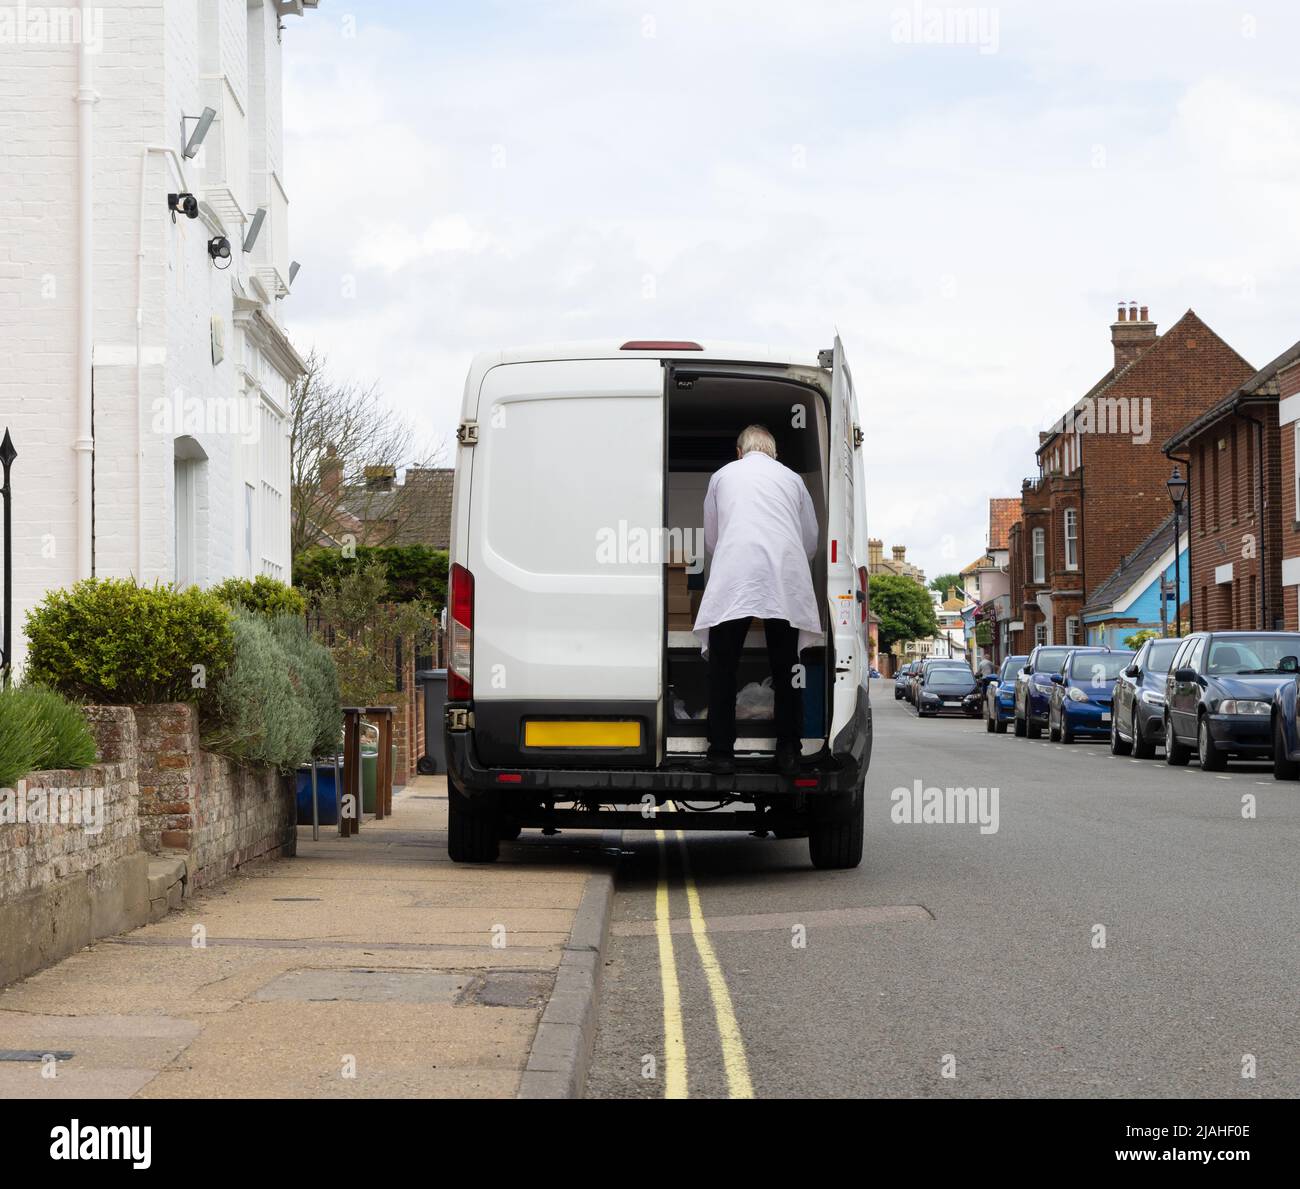 Der Van parkte illegal auf einer doppelten gelben Linie und blockierte den Bürgersteig für Fußgänger. Stockfoto